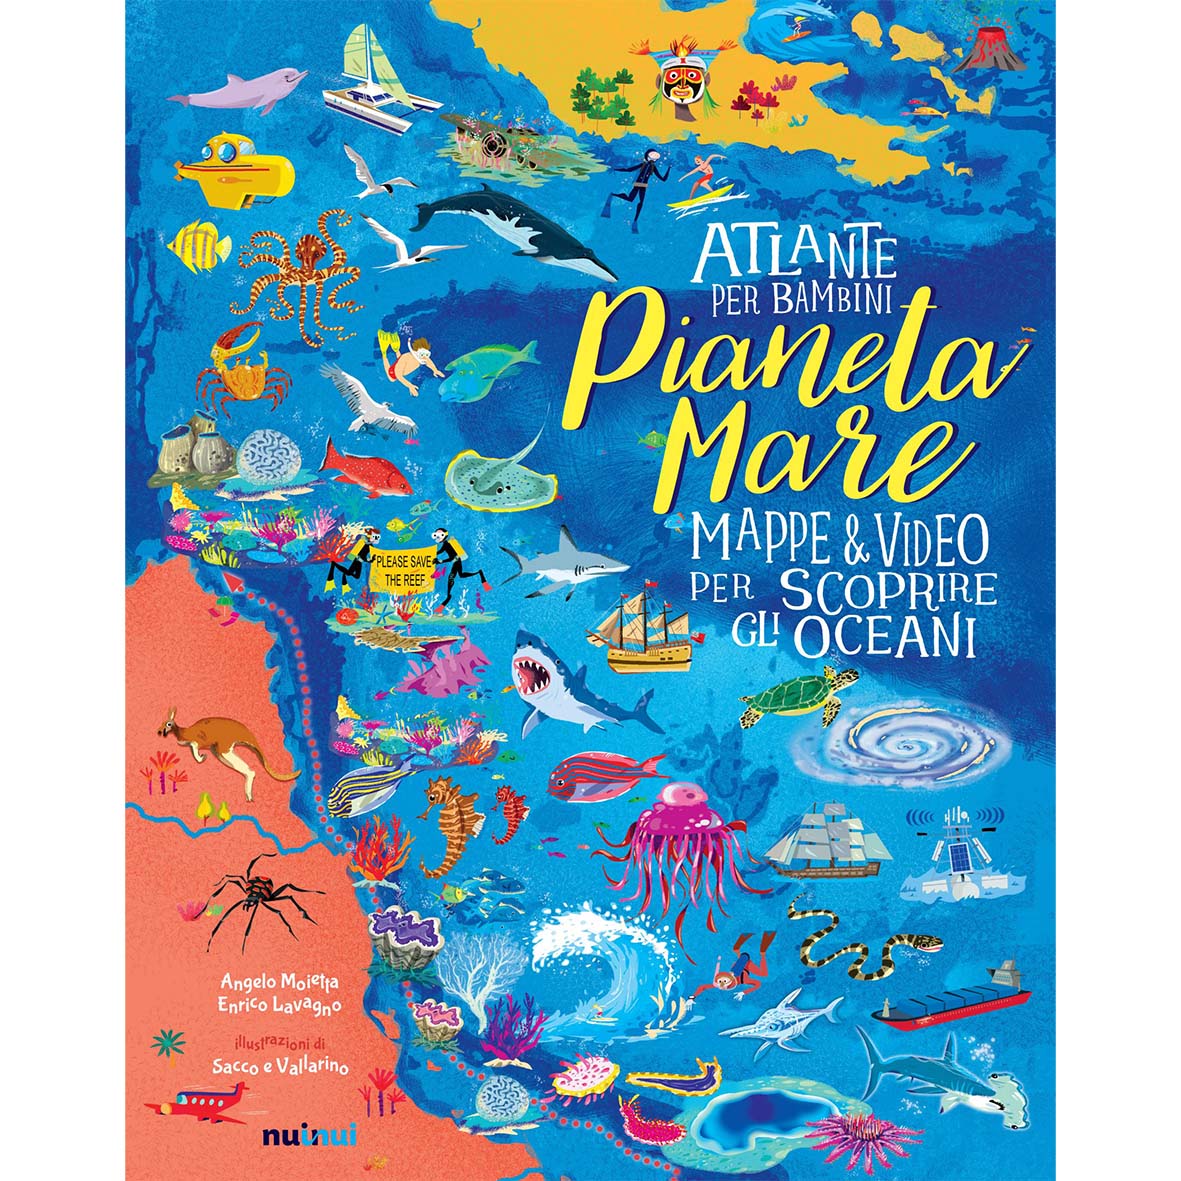 Sea planet - atlas for children